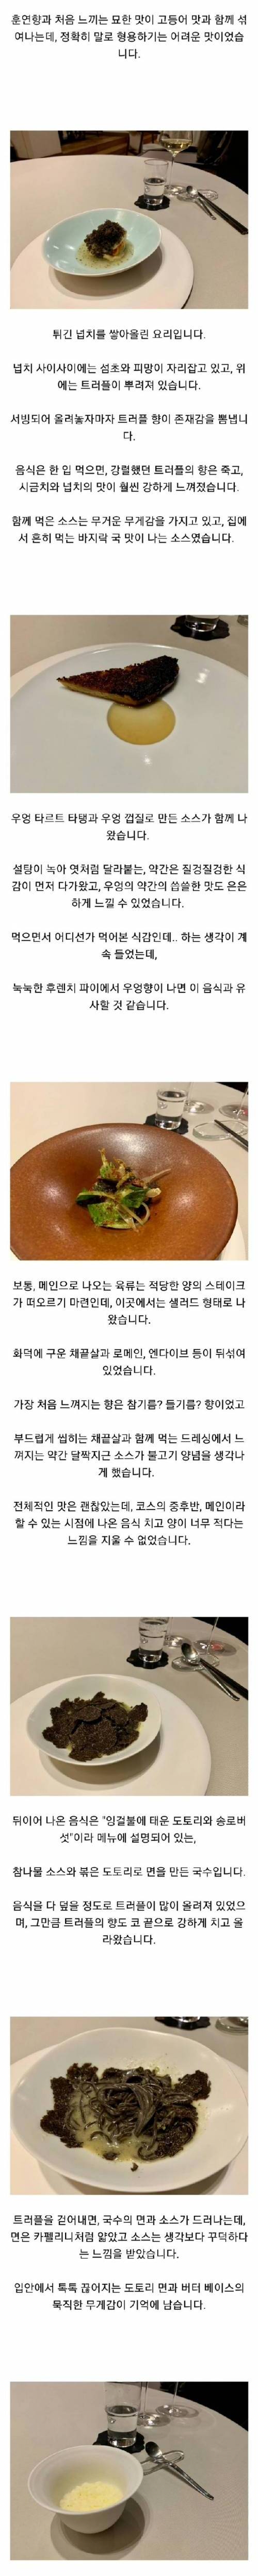 [스압] 현재 한국 최고 수준으로 평가되는 식당